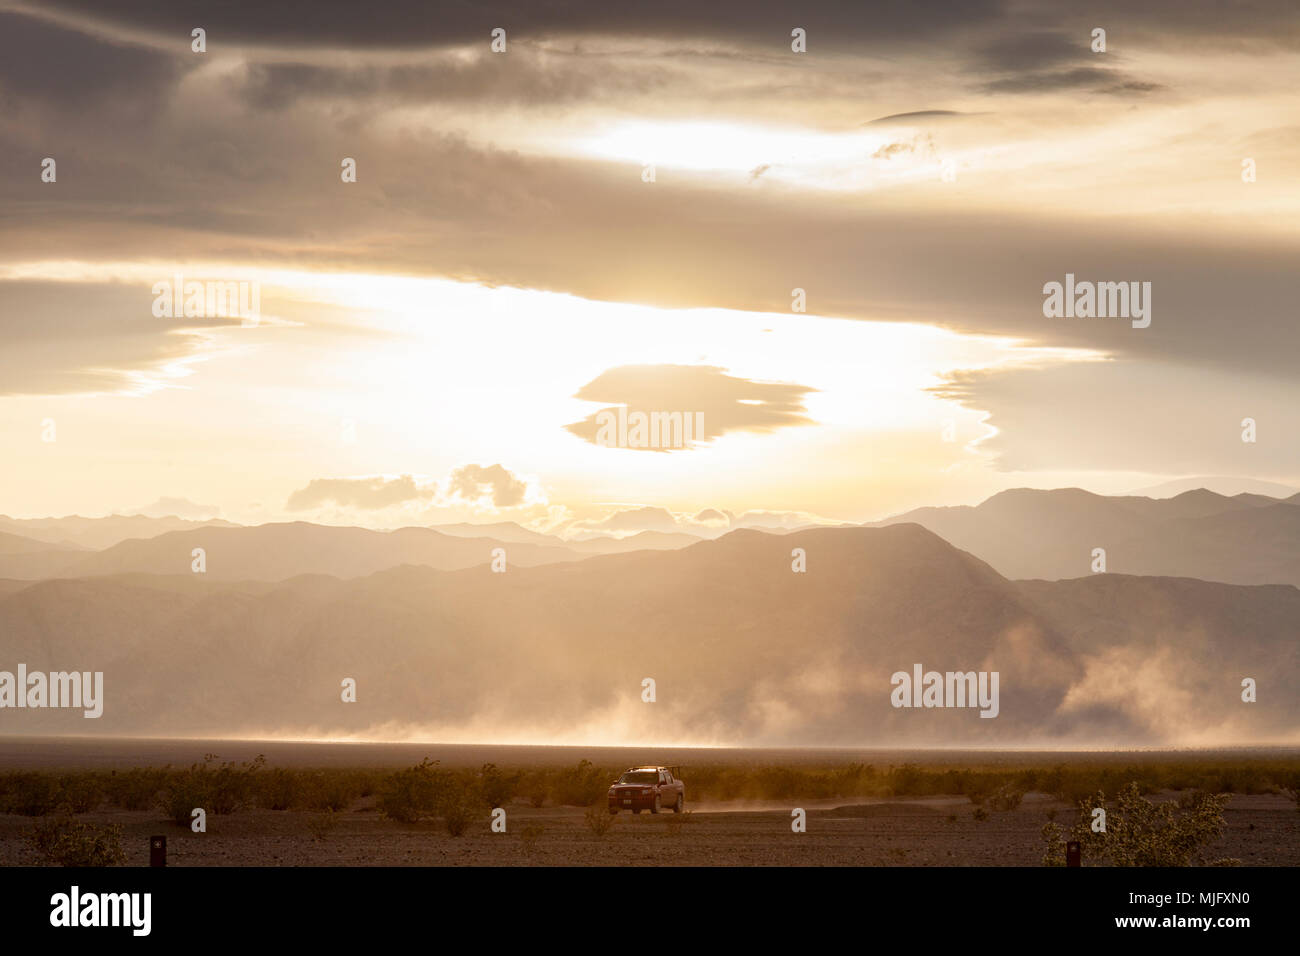 4X4 véhicule roulant sur la vallée de la mort, Californie, sous un ciel dramatique. Banque D'Images